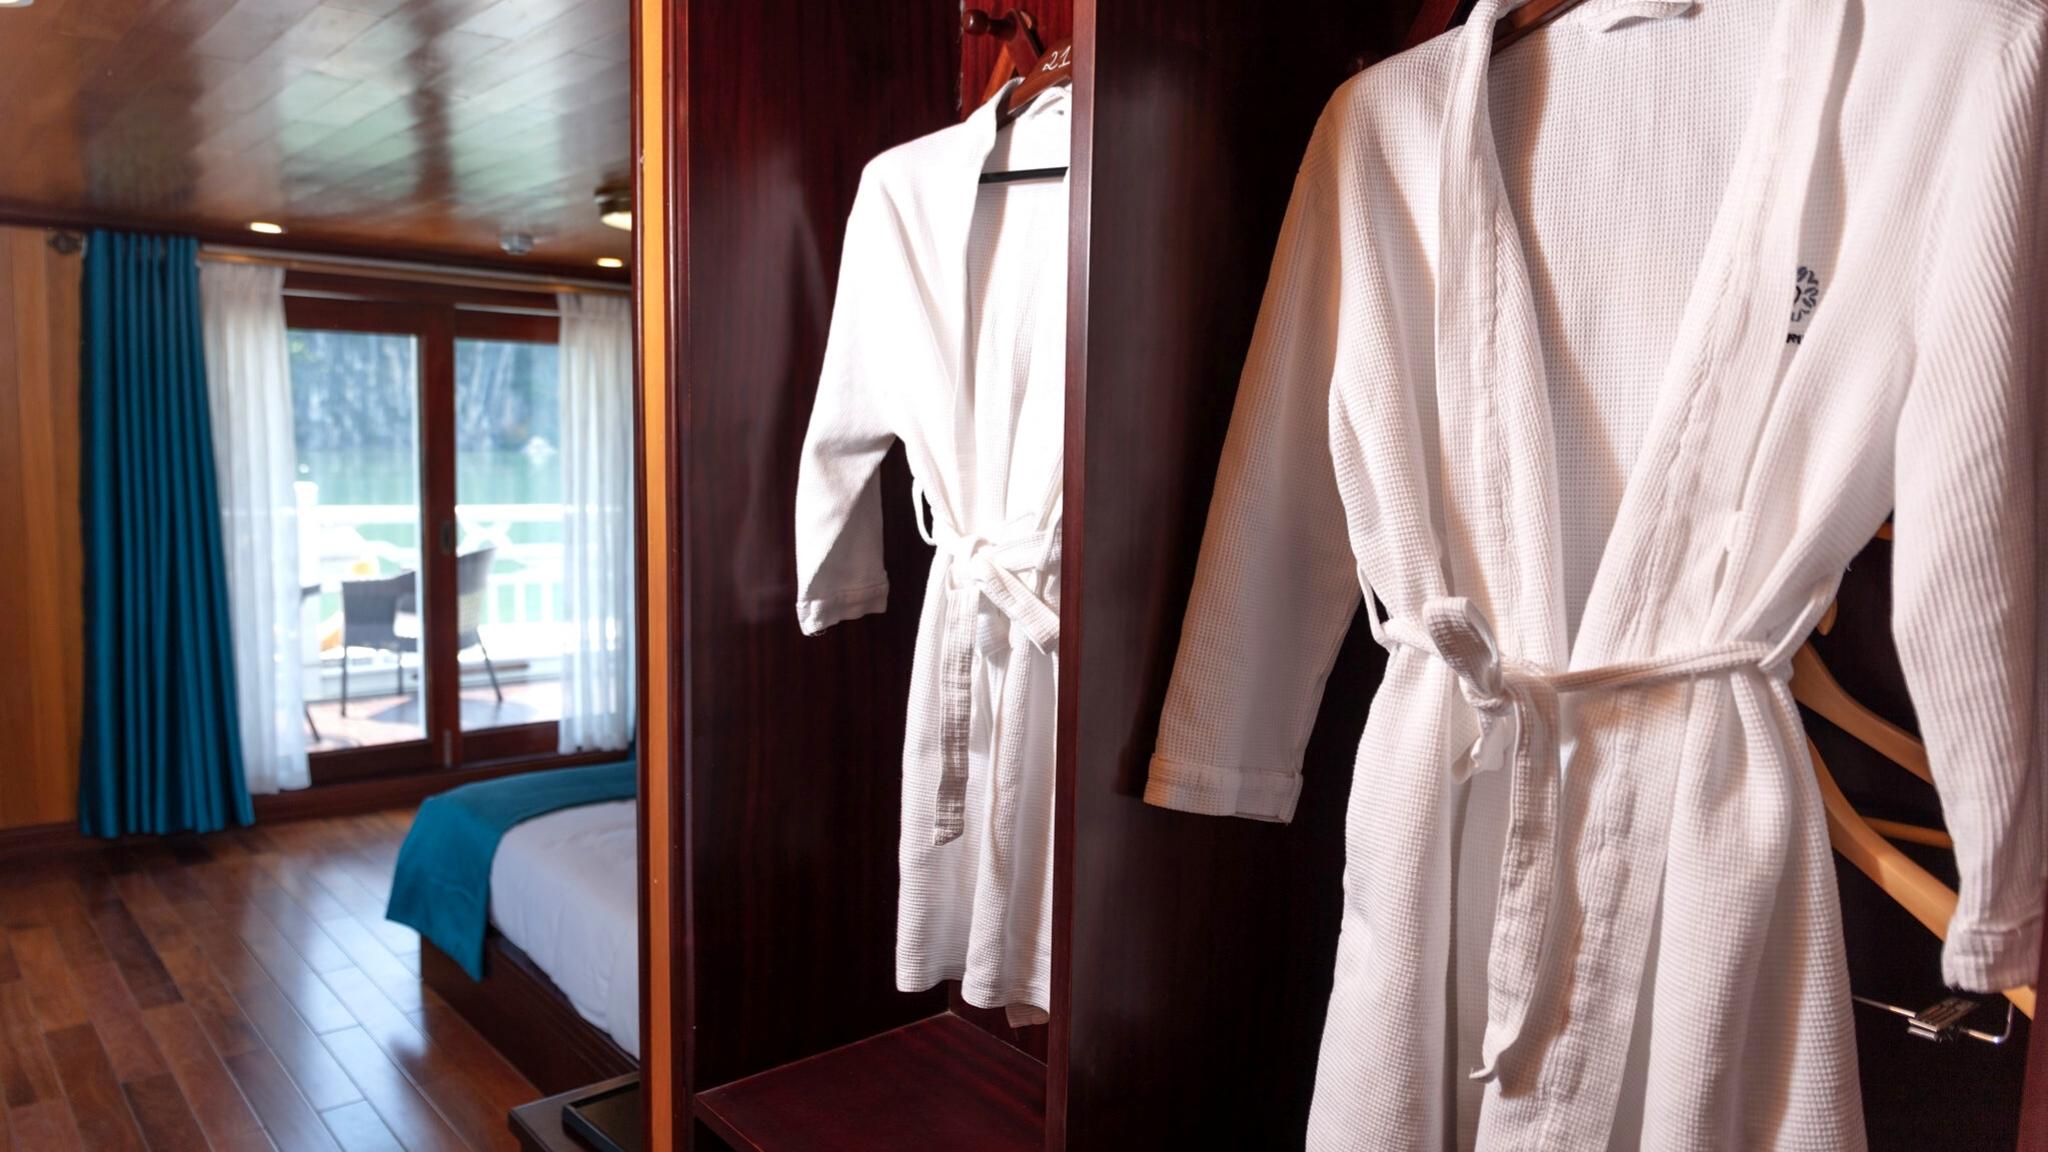 Clean white bathrobes